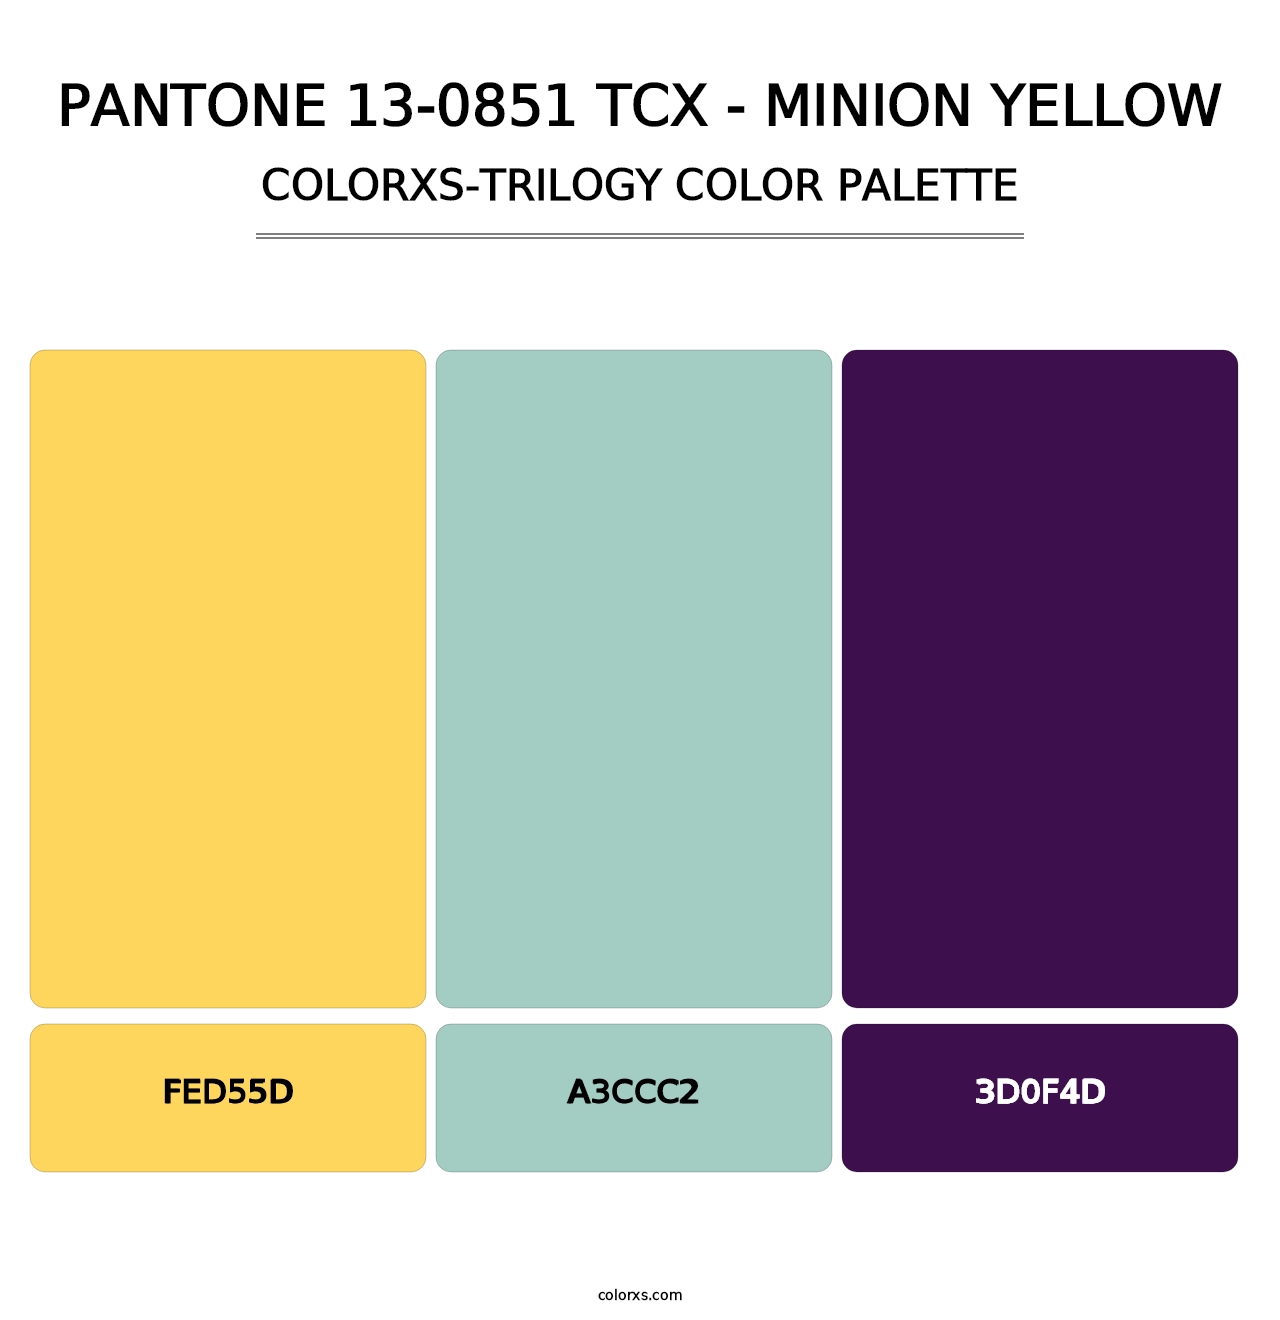 PANTONE 13-0851 TCX - Minion Yellow - Colorxs Trilogy Palette